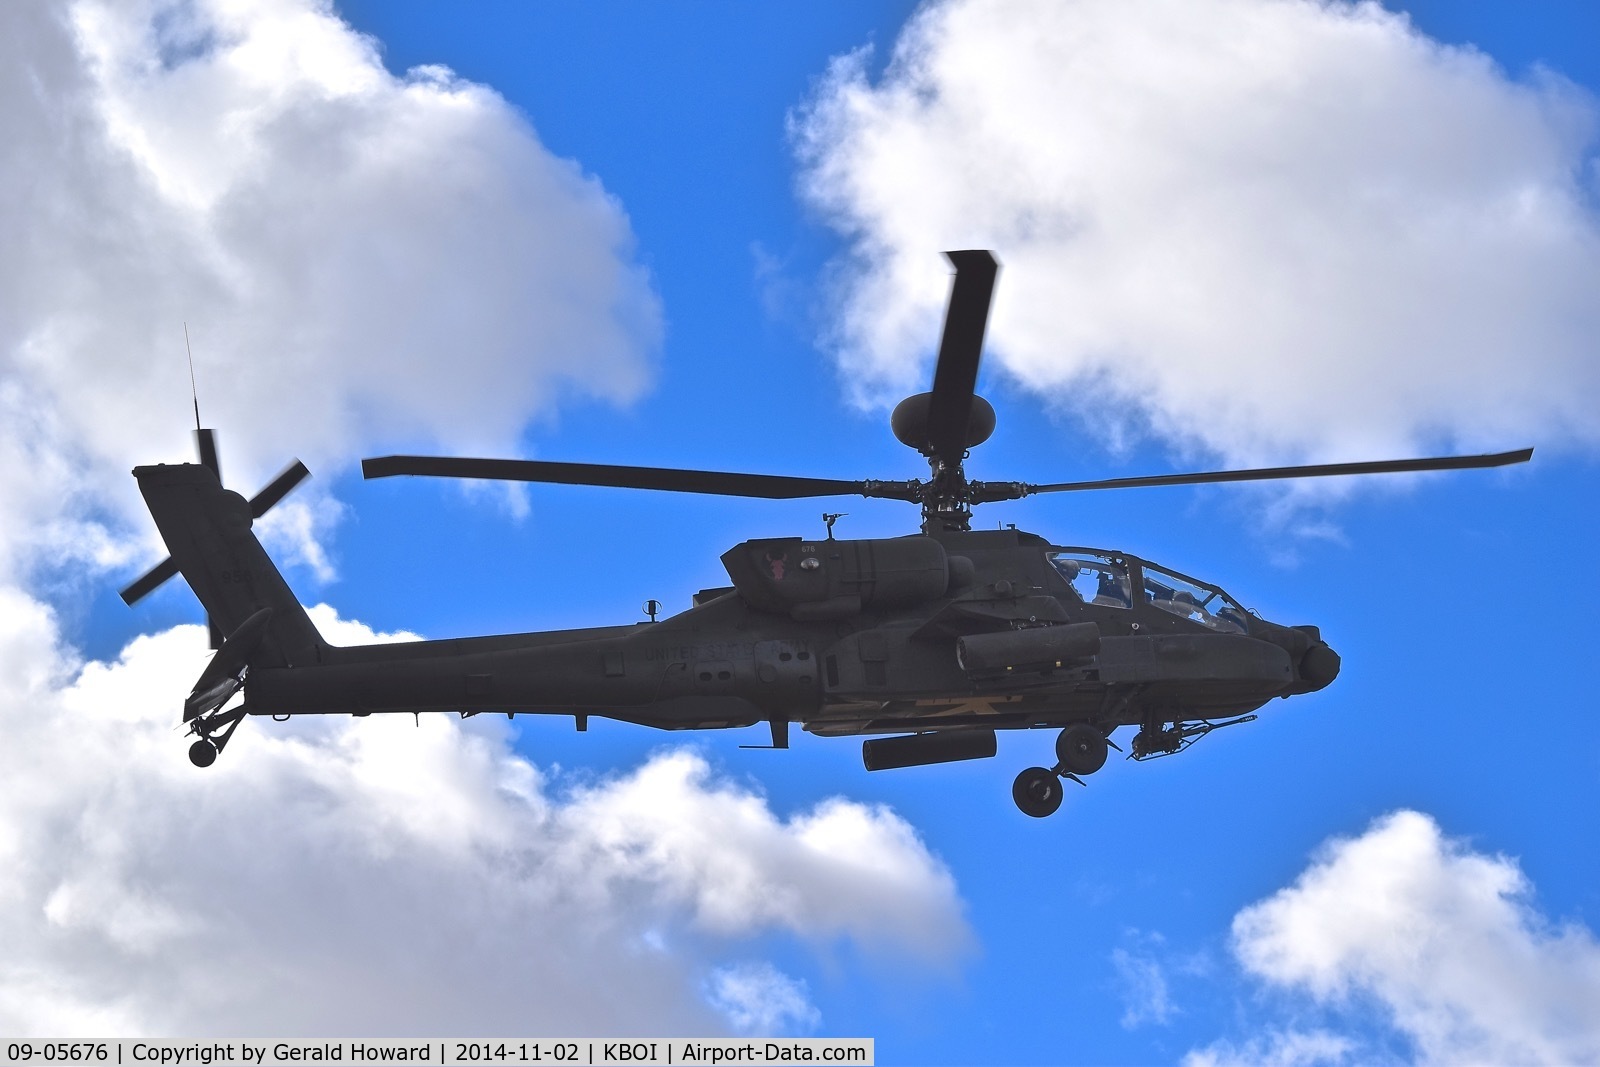 09-05676, 2009 Boeing AH-64D Longbow Apache C/N PVD676, 1-183rd AVN BN, Idaho Army National Guard